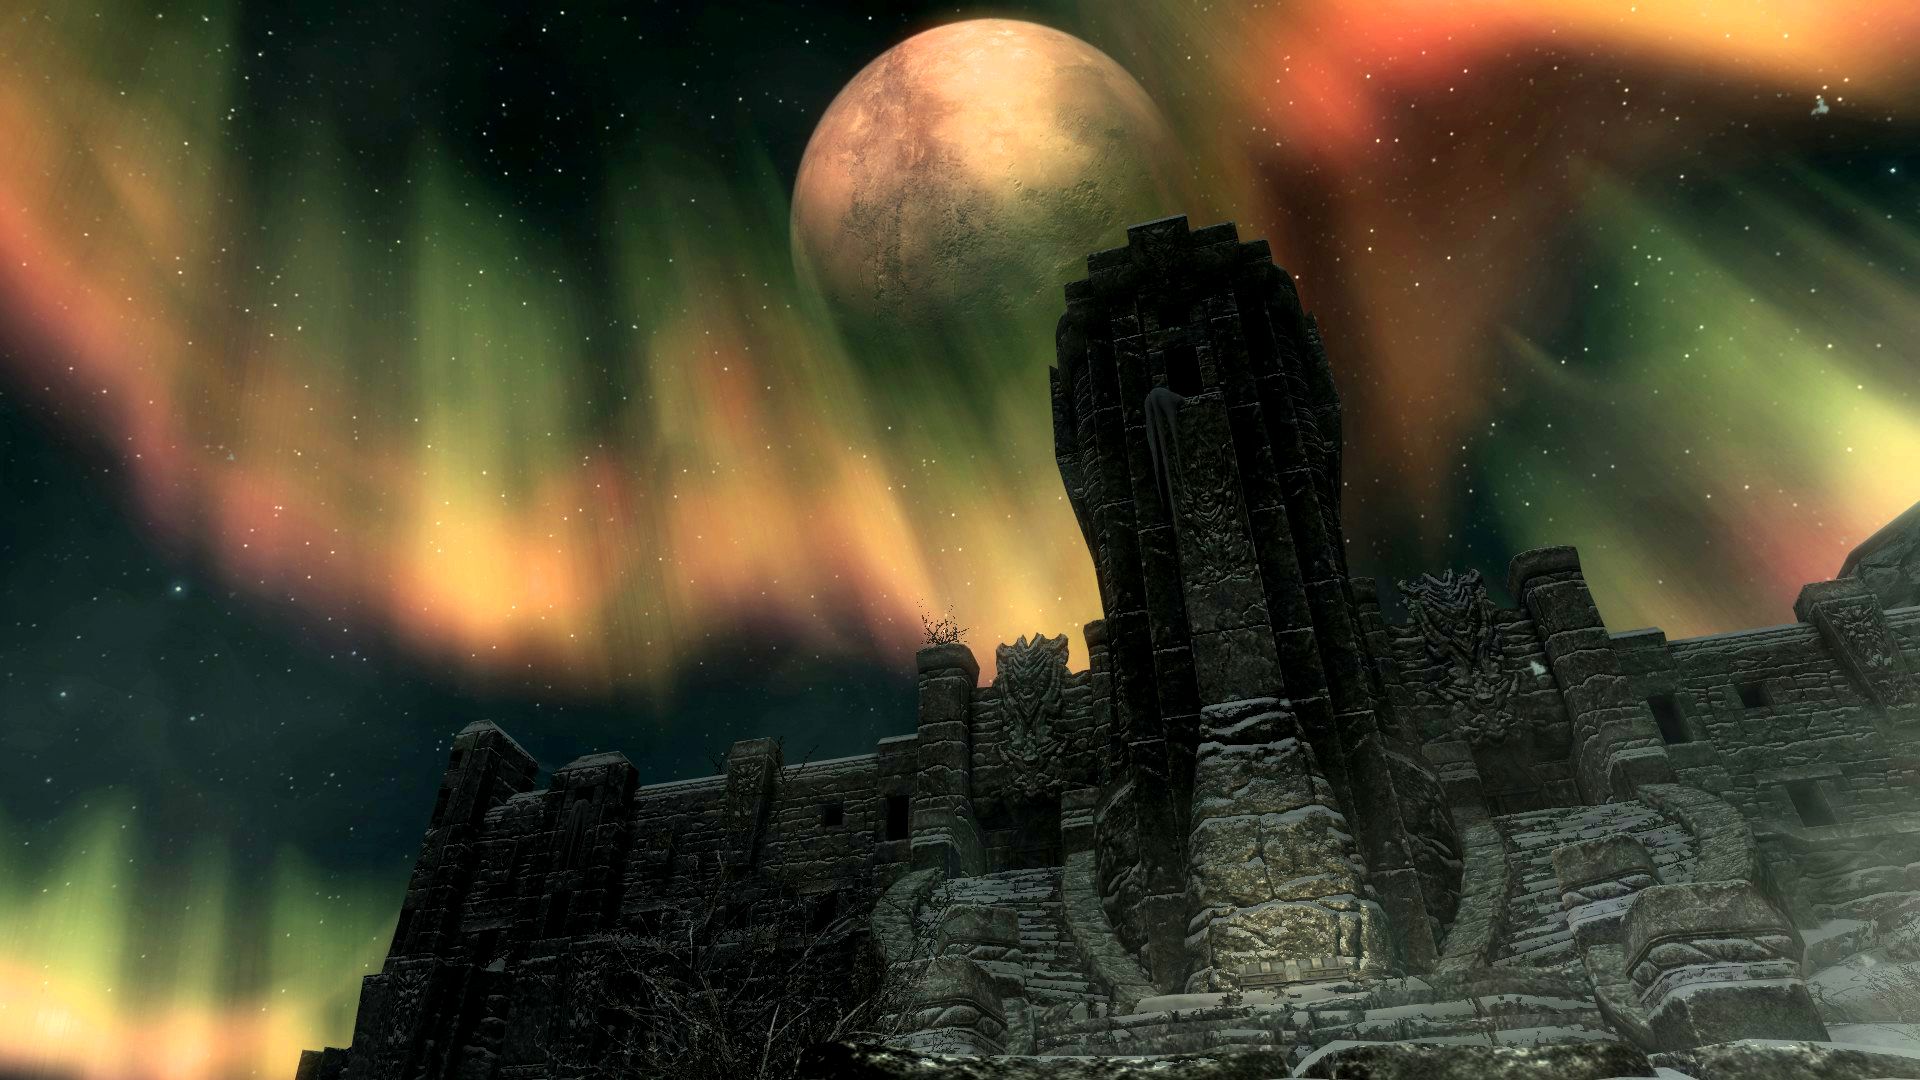 Descarga gratuita de fondo de pantalla para móvil de The Elder Scrolls V: Skyrim, Skyrim, Los Documentos Antiguos, Videojuego.